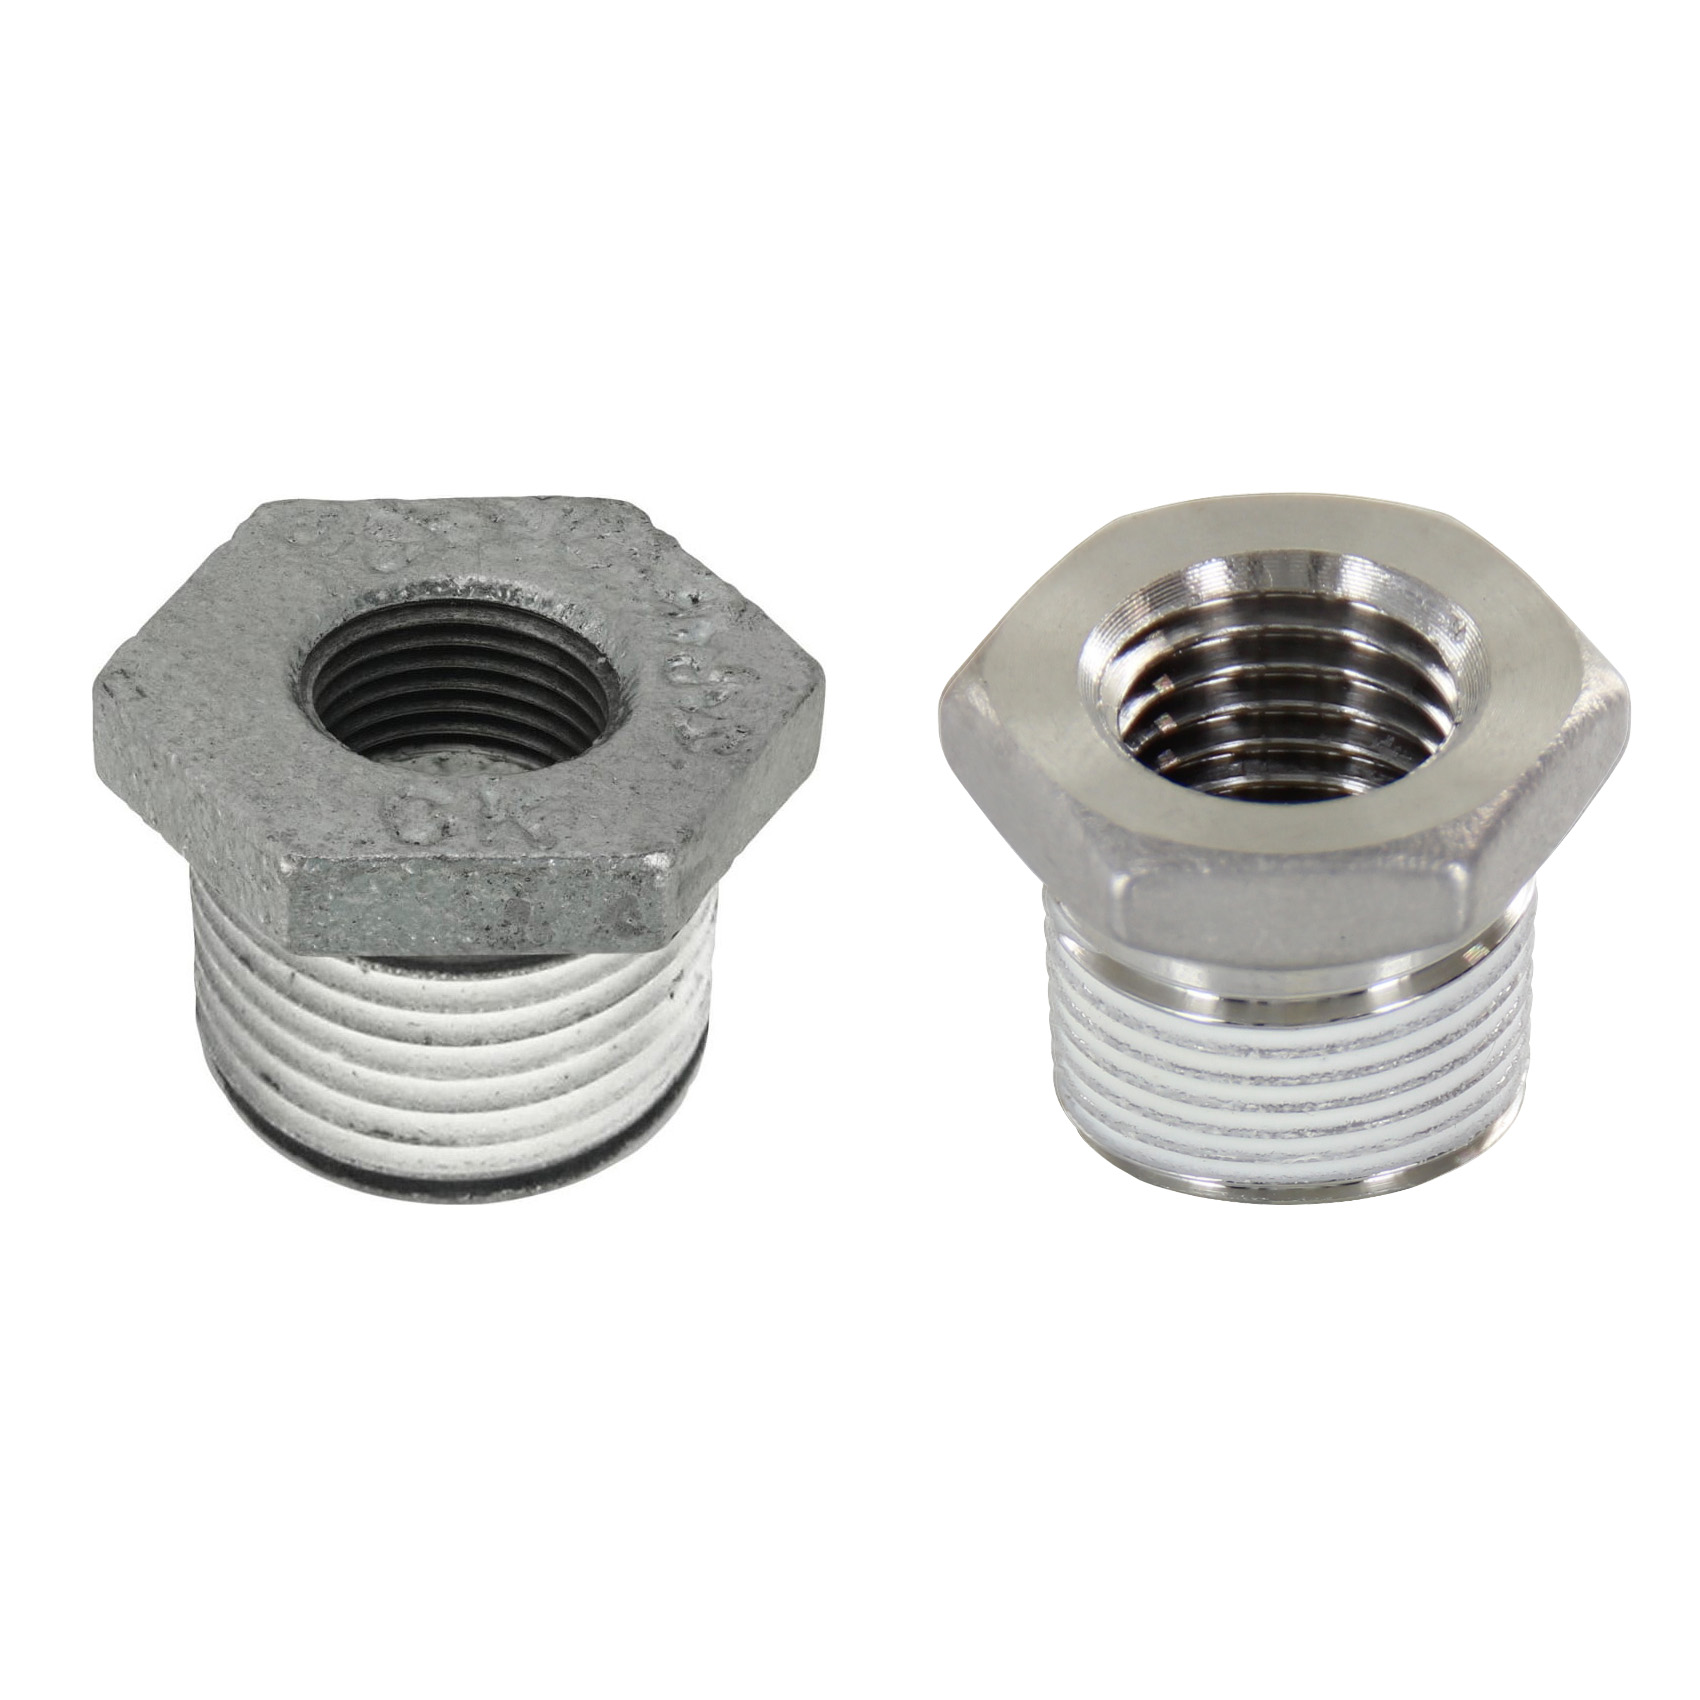 Low Pressure Screw Fittings - Thread Coated Type - Steel Pipe Fittings - Bushings (SUCPB46) 